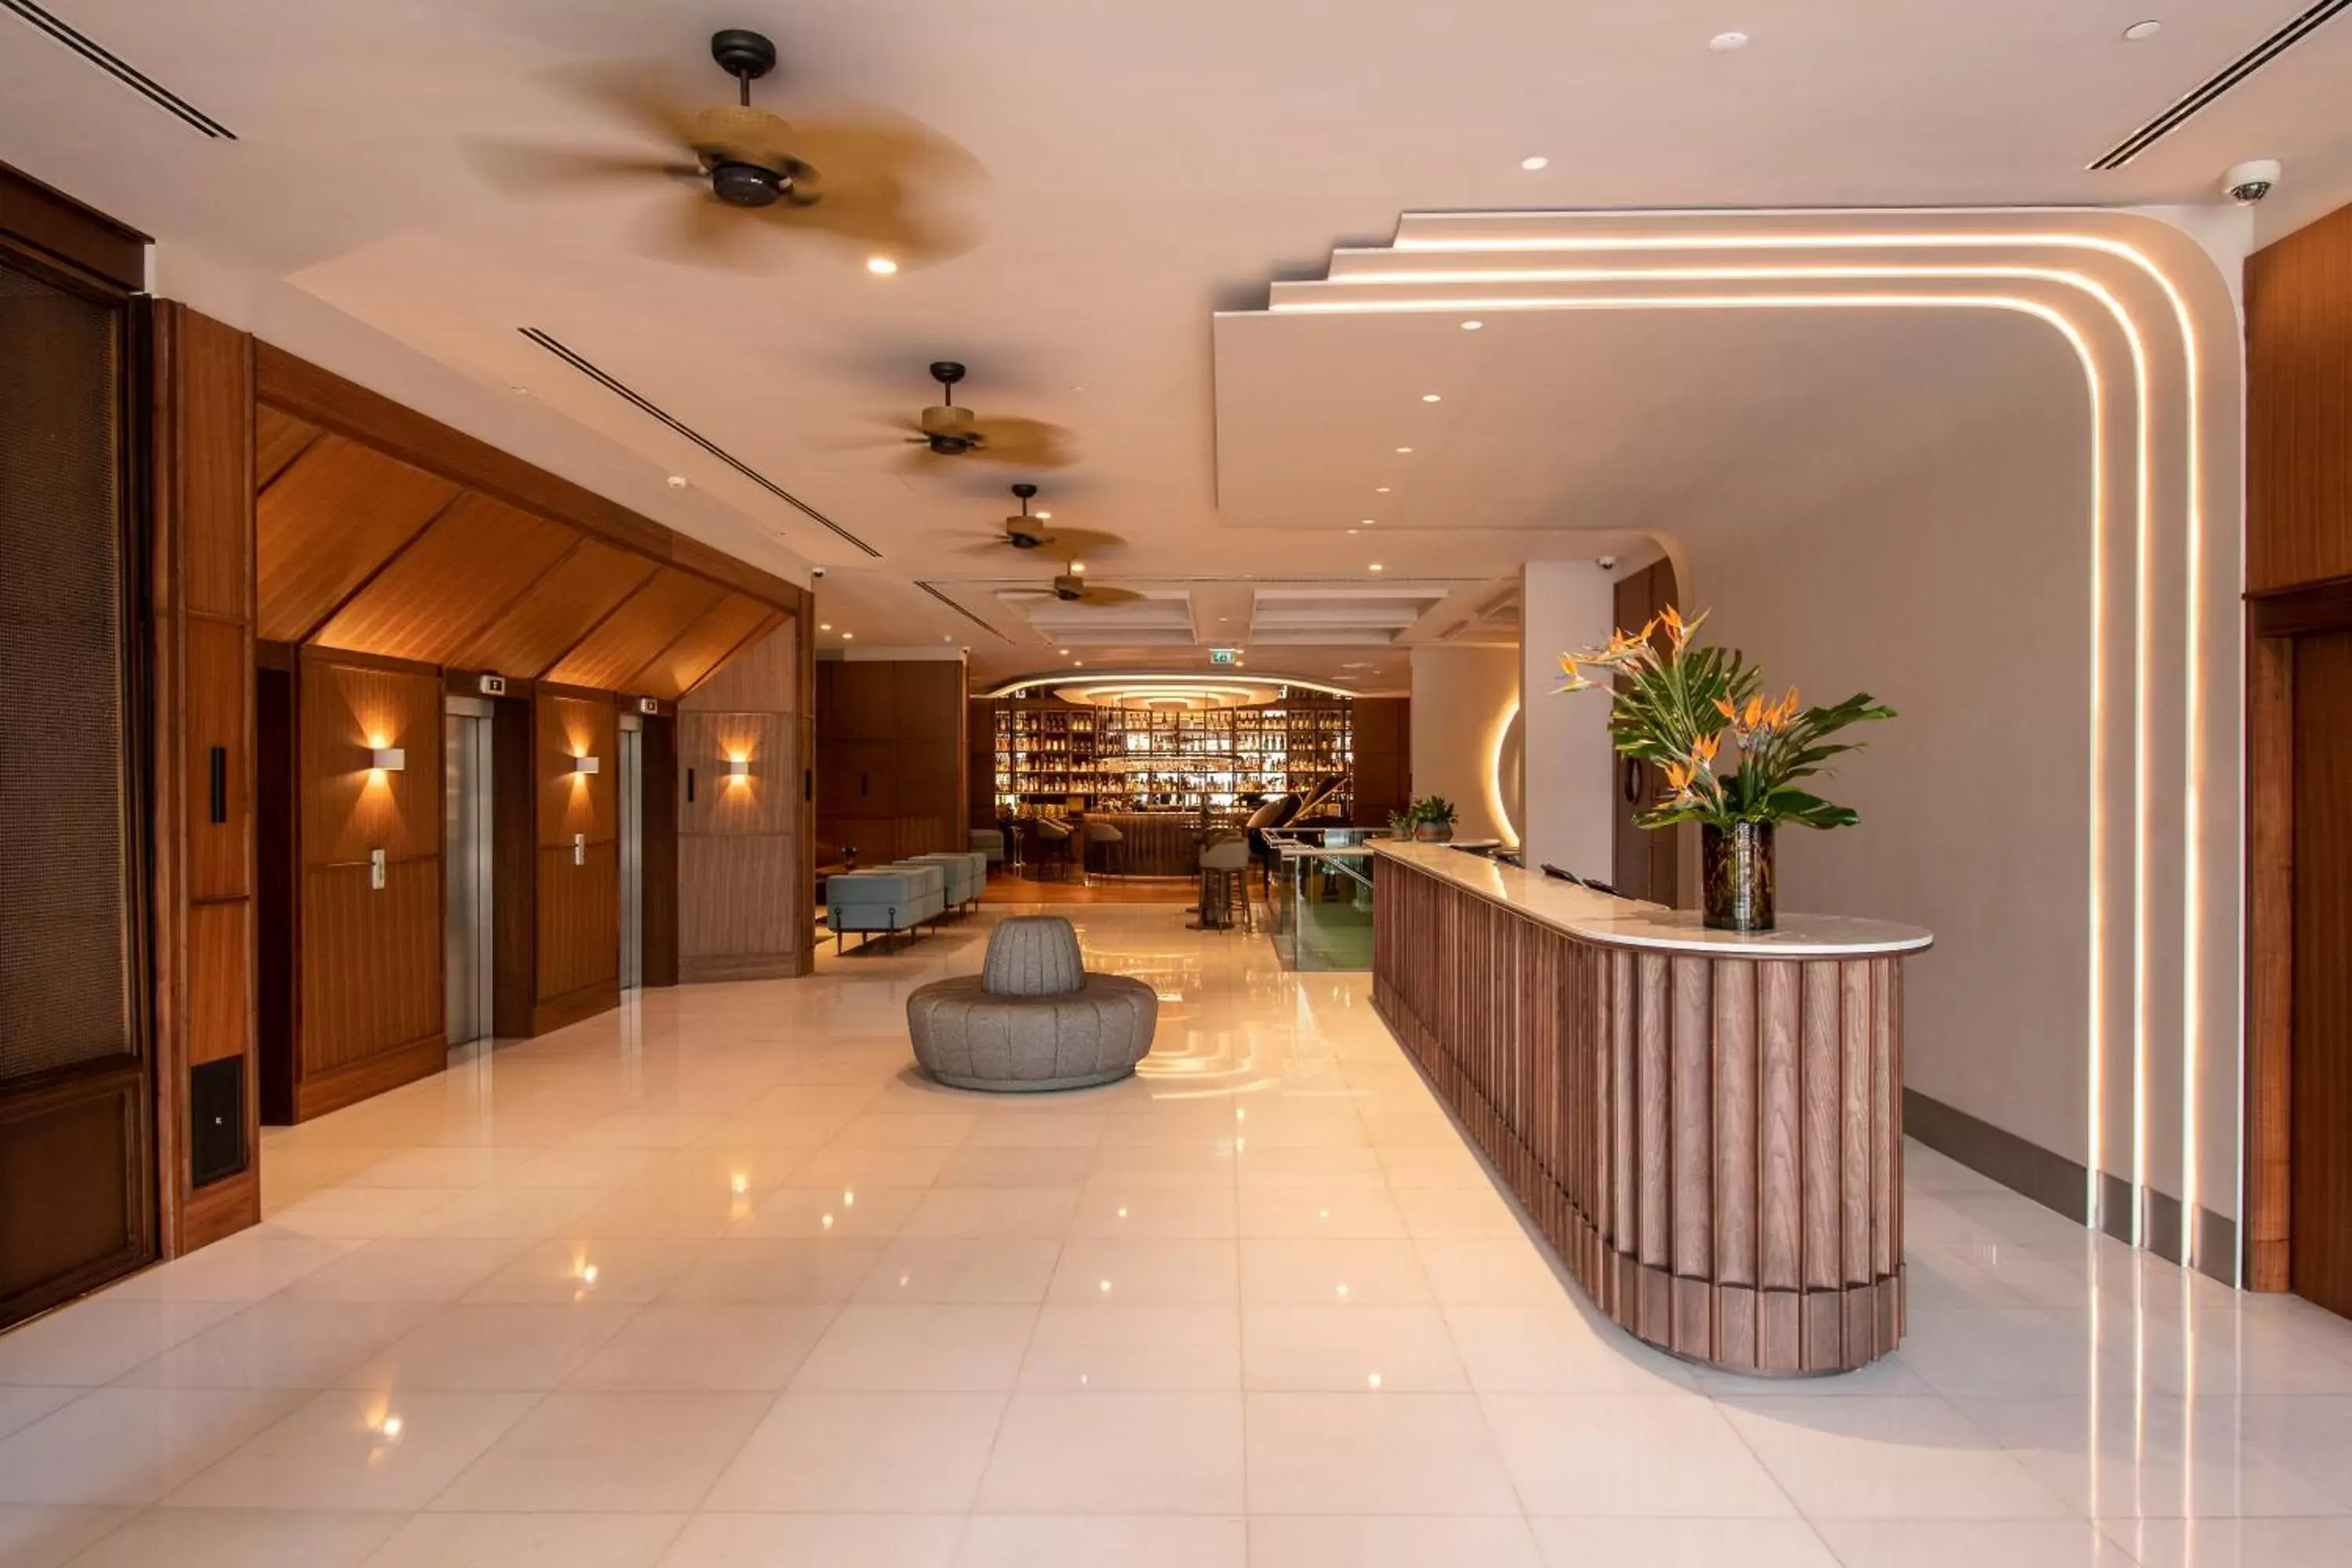 Lobby or reception, Lobby/Reception in SANA Malhoa Hotel